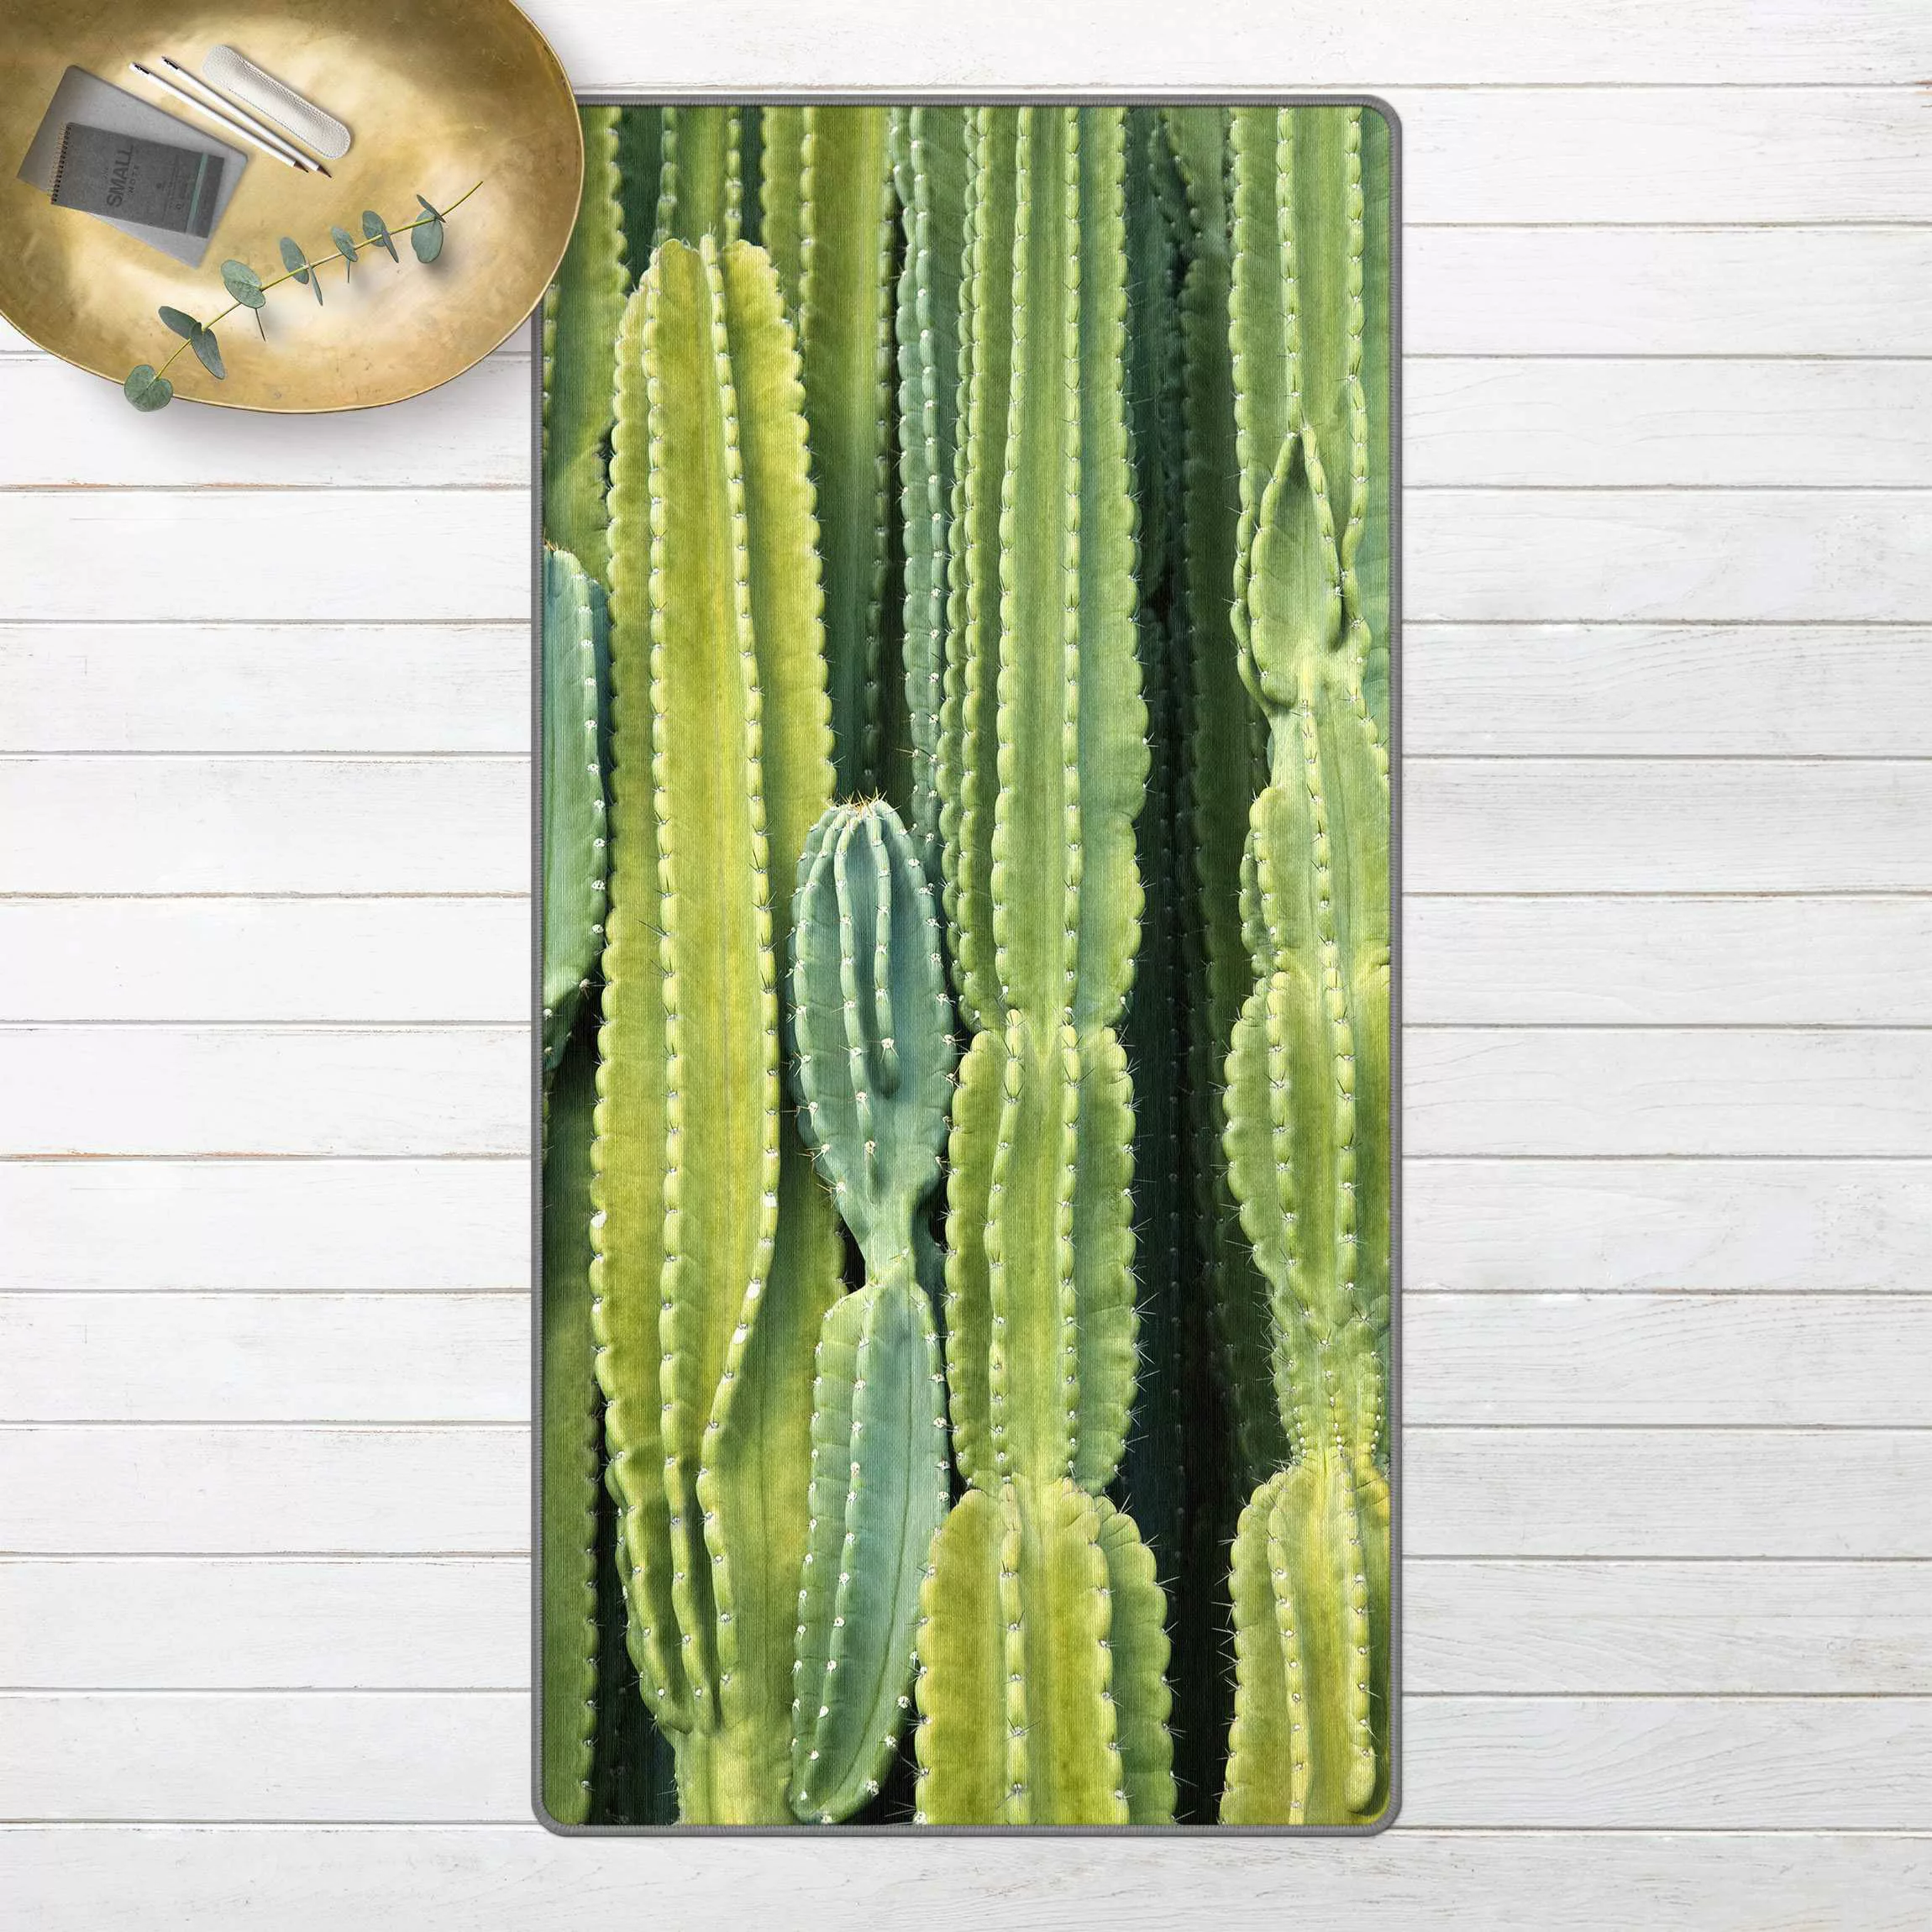 Teppich Kaktus Wand günstig online kaufen